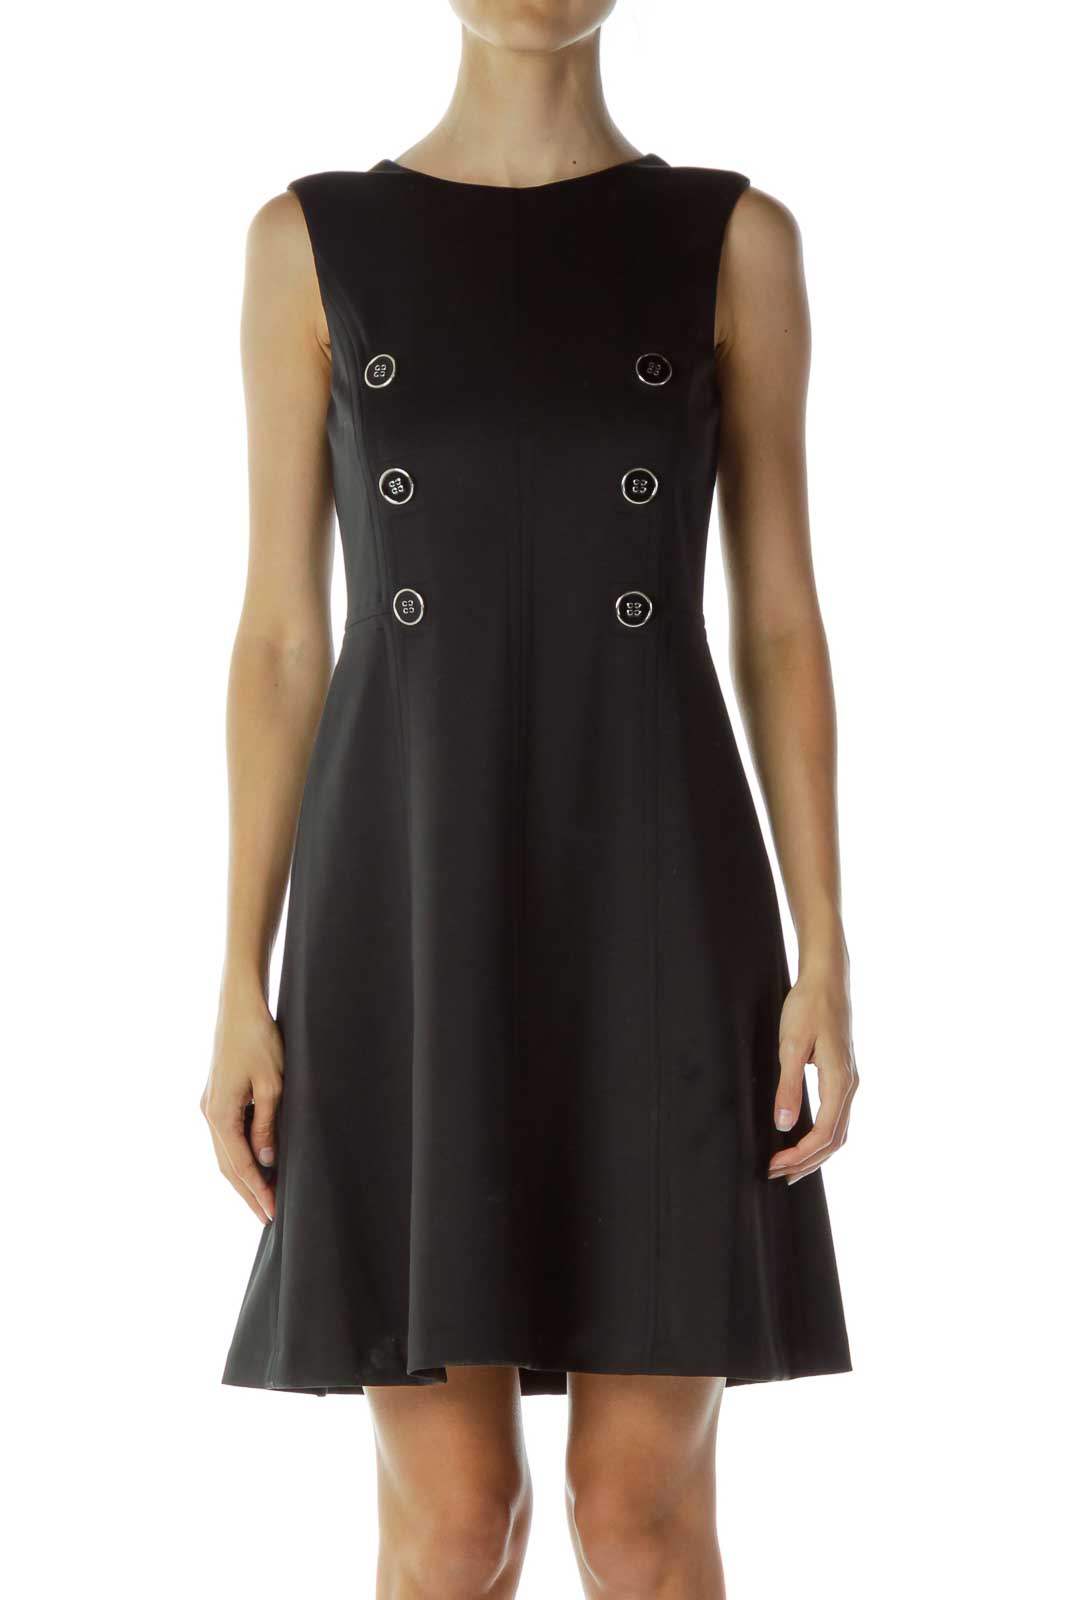 Tommy Hilfiger - Black Structured A-Line Dress Spandex Polyester | SilkRoll